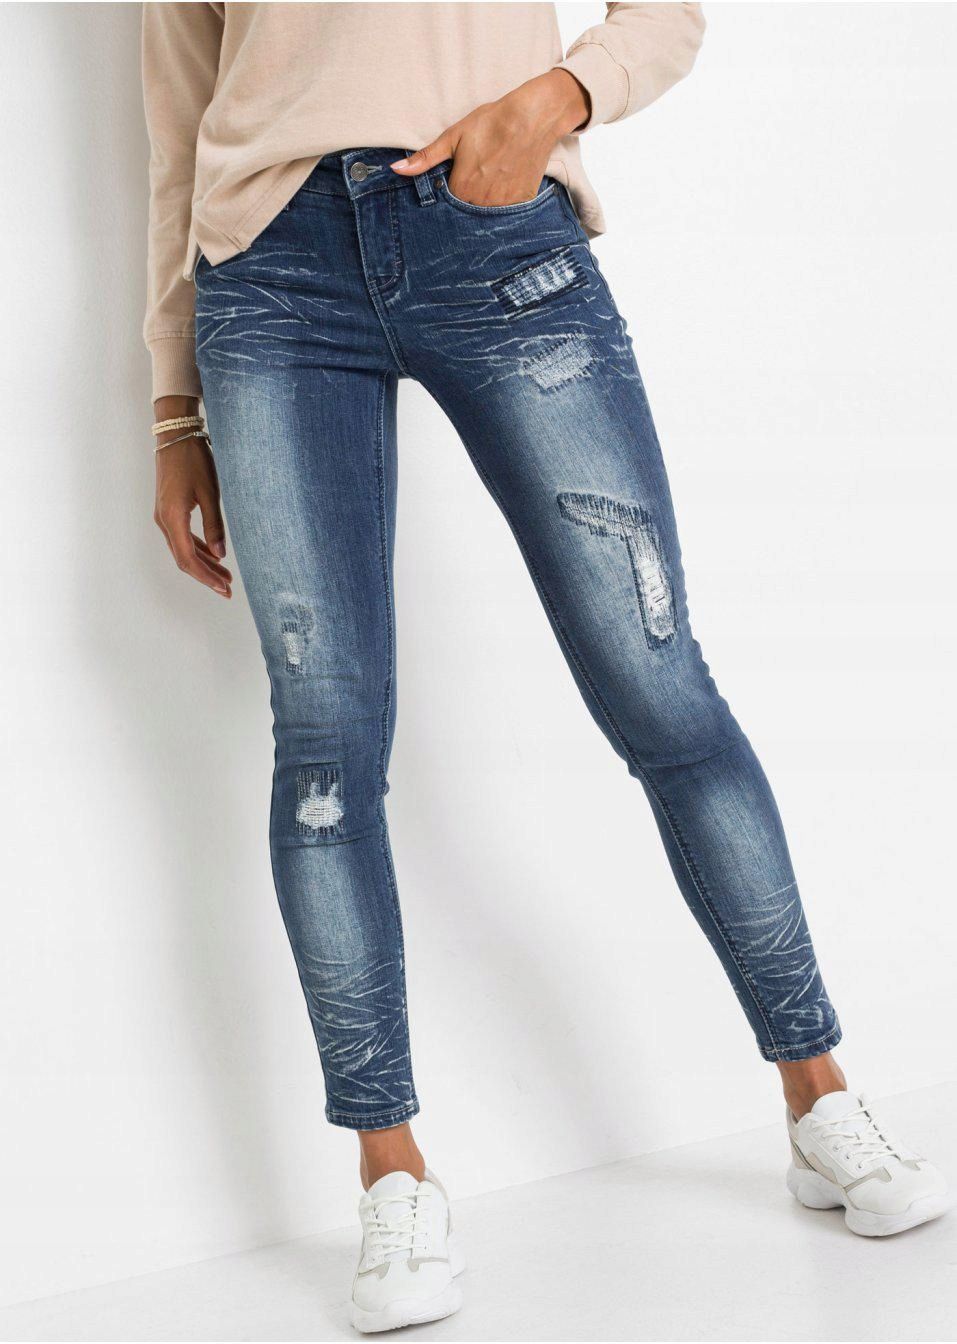 Джинсы разные модели. Bonprix джинсы скинни. Джинсы Бонприкс соответствие размеру. Как заказать джинсы Бонприкс. Mixed jeans